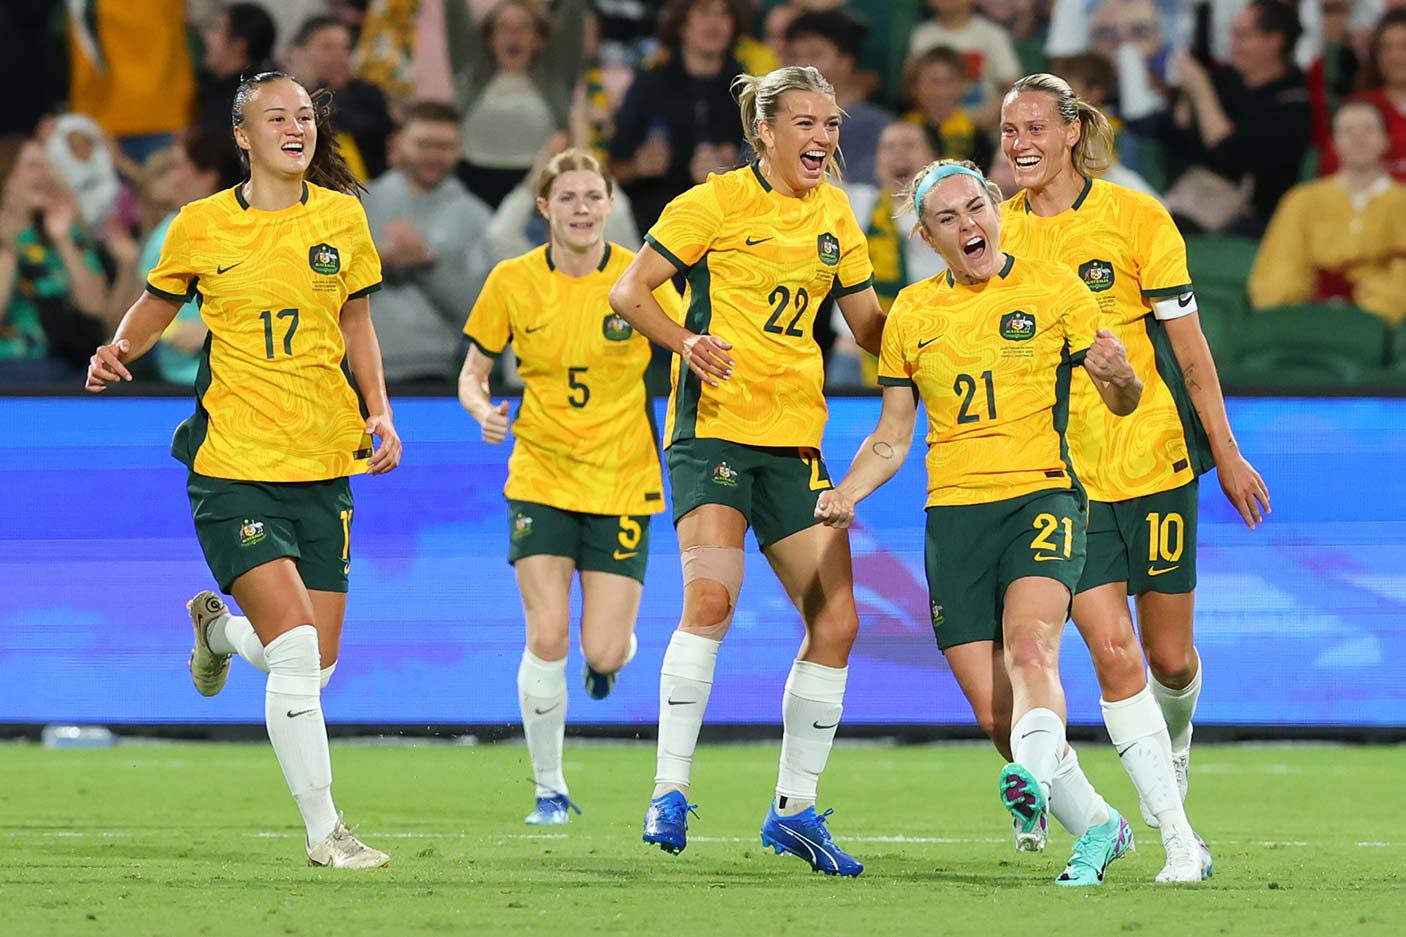 Matildas' players celebrating after a goal at a football match